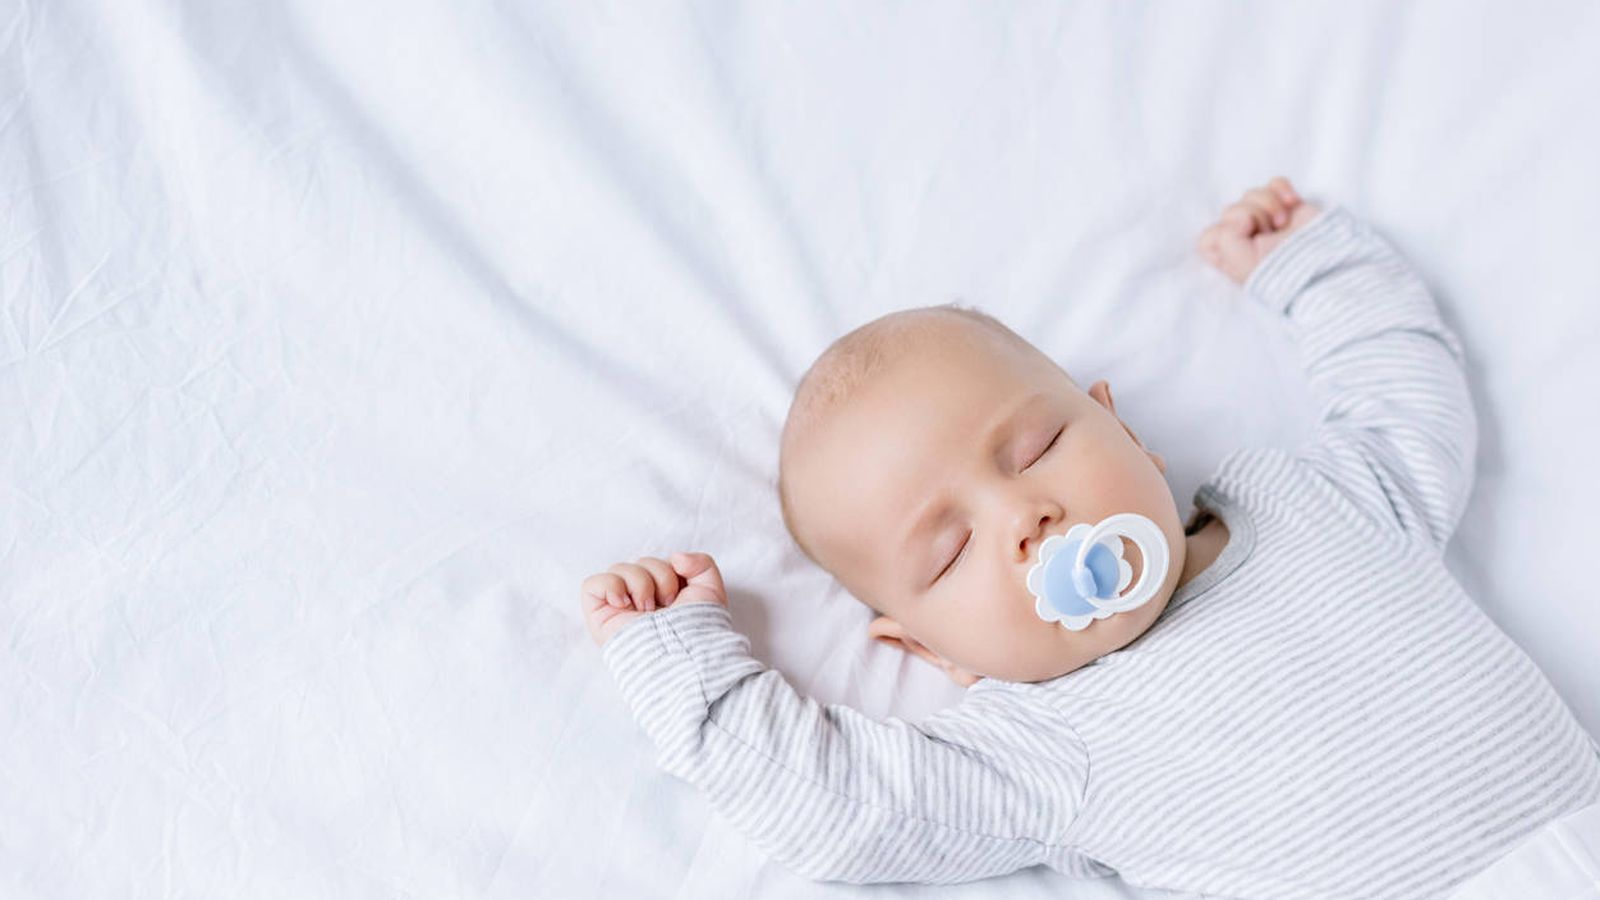 Foto: La media de un bebé durante su primer año de vida es de entre 12 y 16 horas de sueño (Foto: iStock)